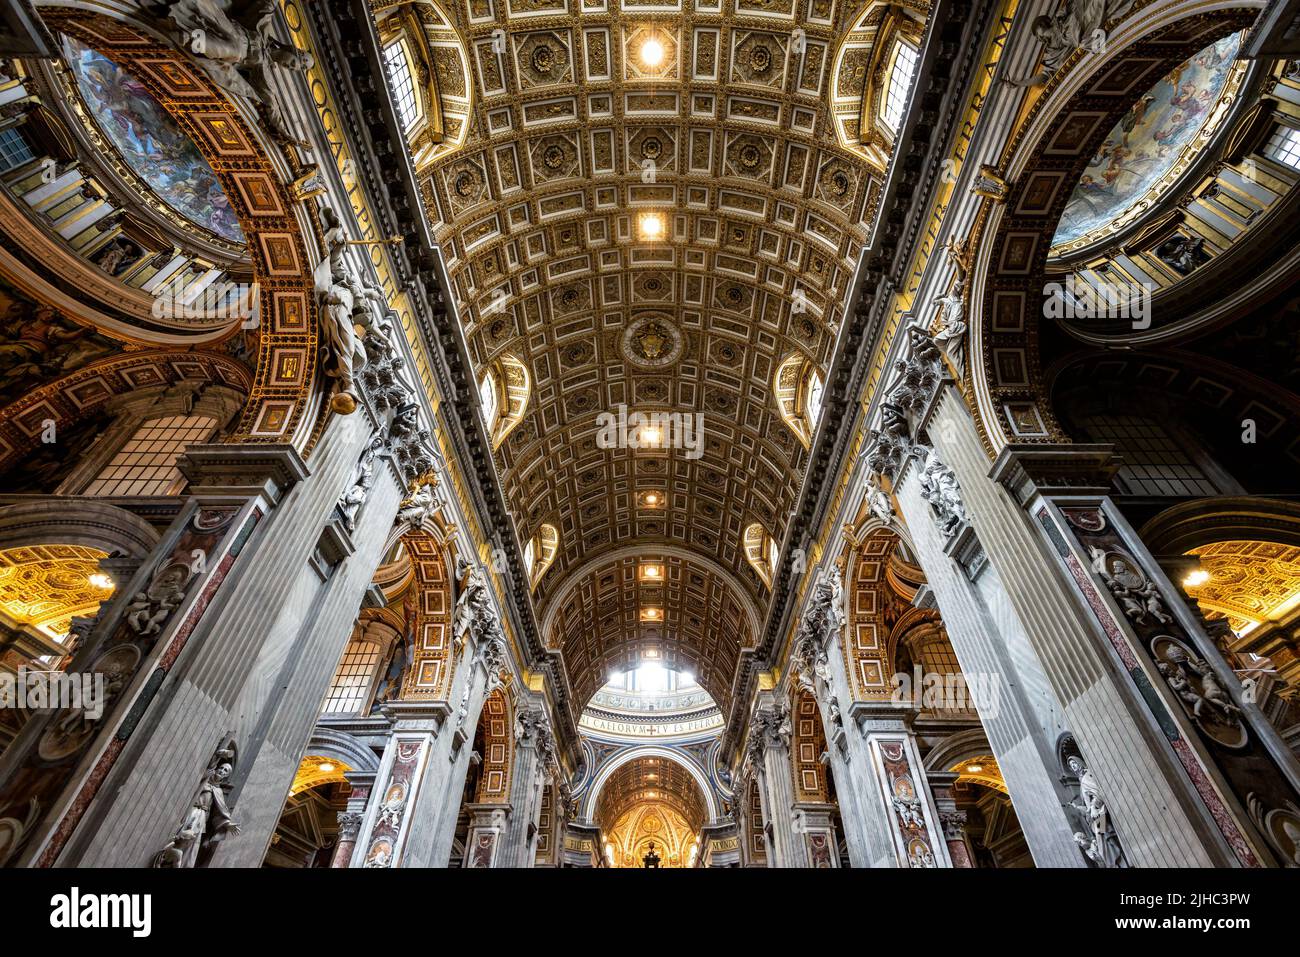 Rom - 12. Jun 2021: Im Petersdom, Rom, Italien. Die Kathedrale St. Peters ist das Wahrzeichen von Rom und der Vatikanstadt. Prunkvolle barocke Innenausstattung o Stockfoto